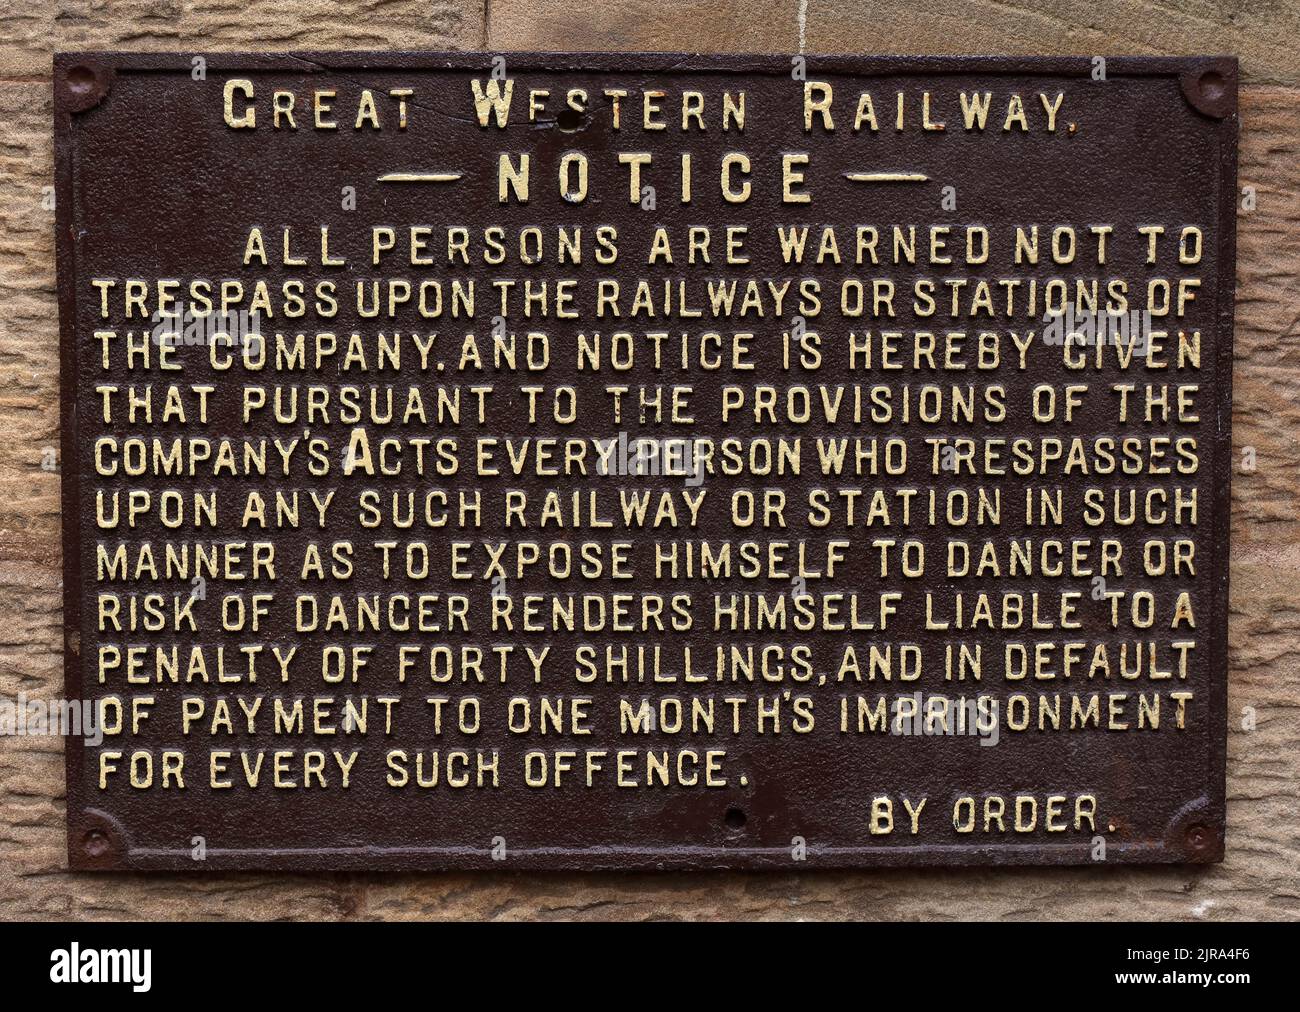 Ghisa GWR - Great Western Railway Notice - per ordine - Nessun trasgressione sulla ferrovia, pena di quaranta scellini Foto Stock